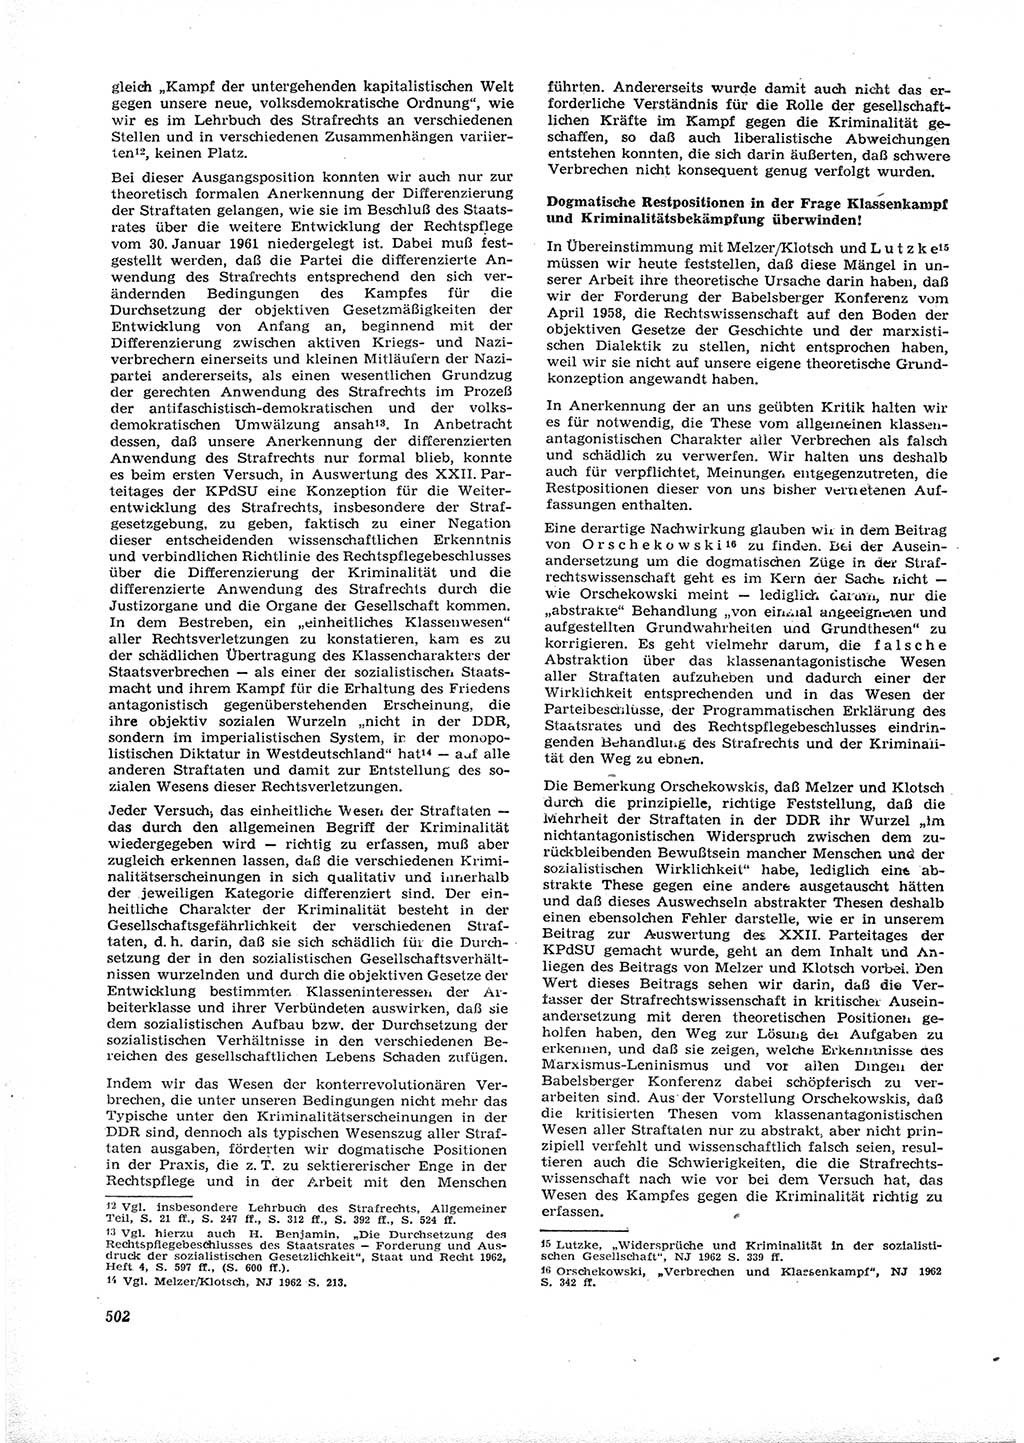 Neue Justiz (NJ), Zeitschrift für Recht und Rechtswissenschaft [Deutsche Demokratische Republik (DDR)], 16. Jahrgang 1962, Seite 502 (NJ DDR 1962, S. 502)